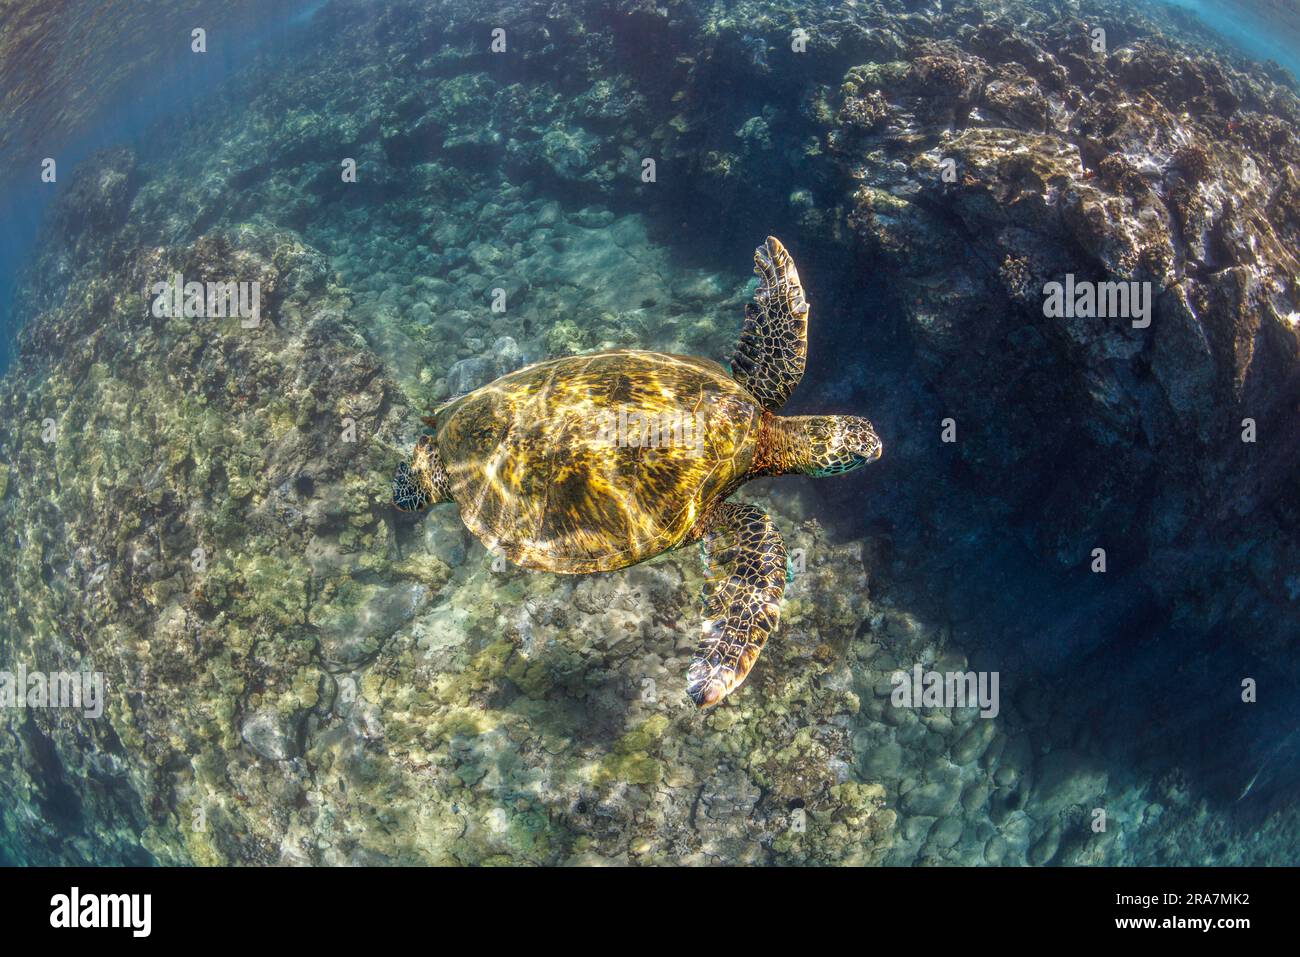 Una tartaruga marina verde, Chelonia mydas, una specie in via di estinzione, scivola sulle formazioni laviche incrostate di corallo al largo di Maui, Hawaii. Foto Stock